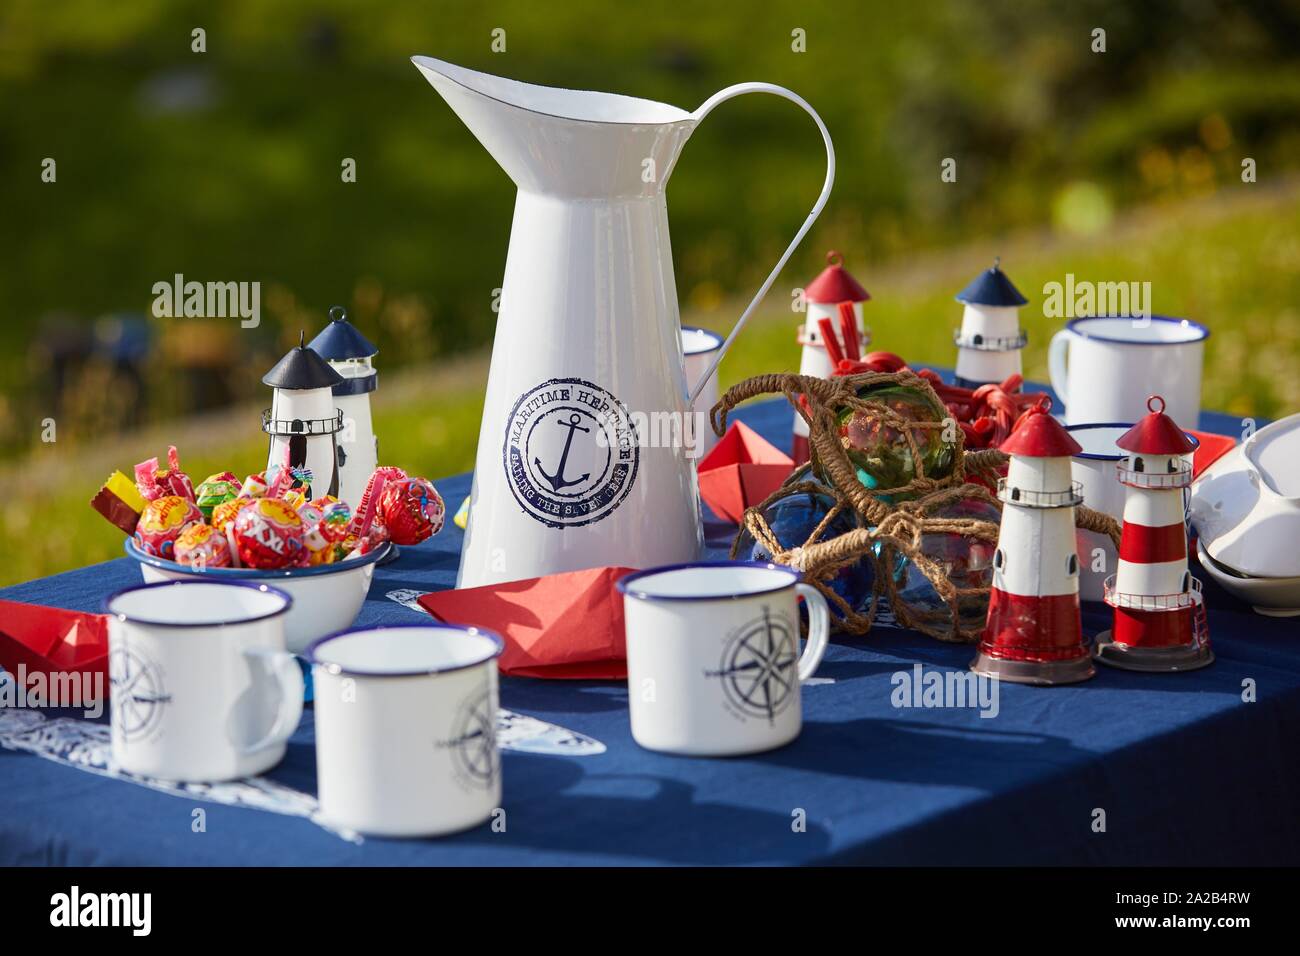 Tabla con jarra y tazas, dulces y marinero detalles Foto de stock